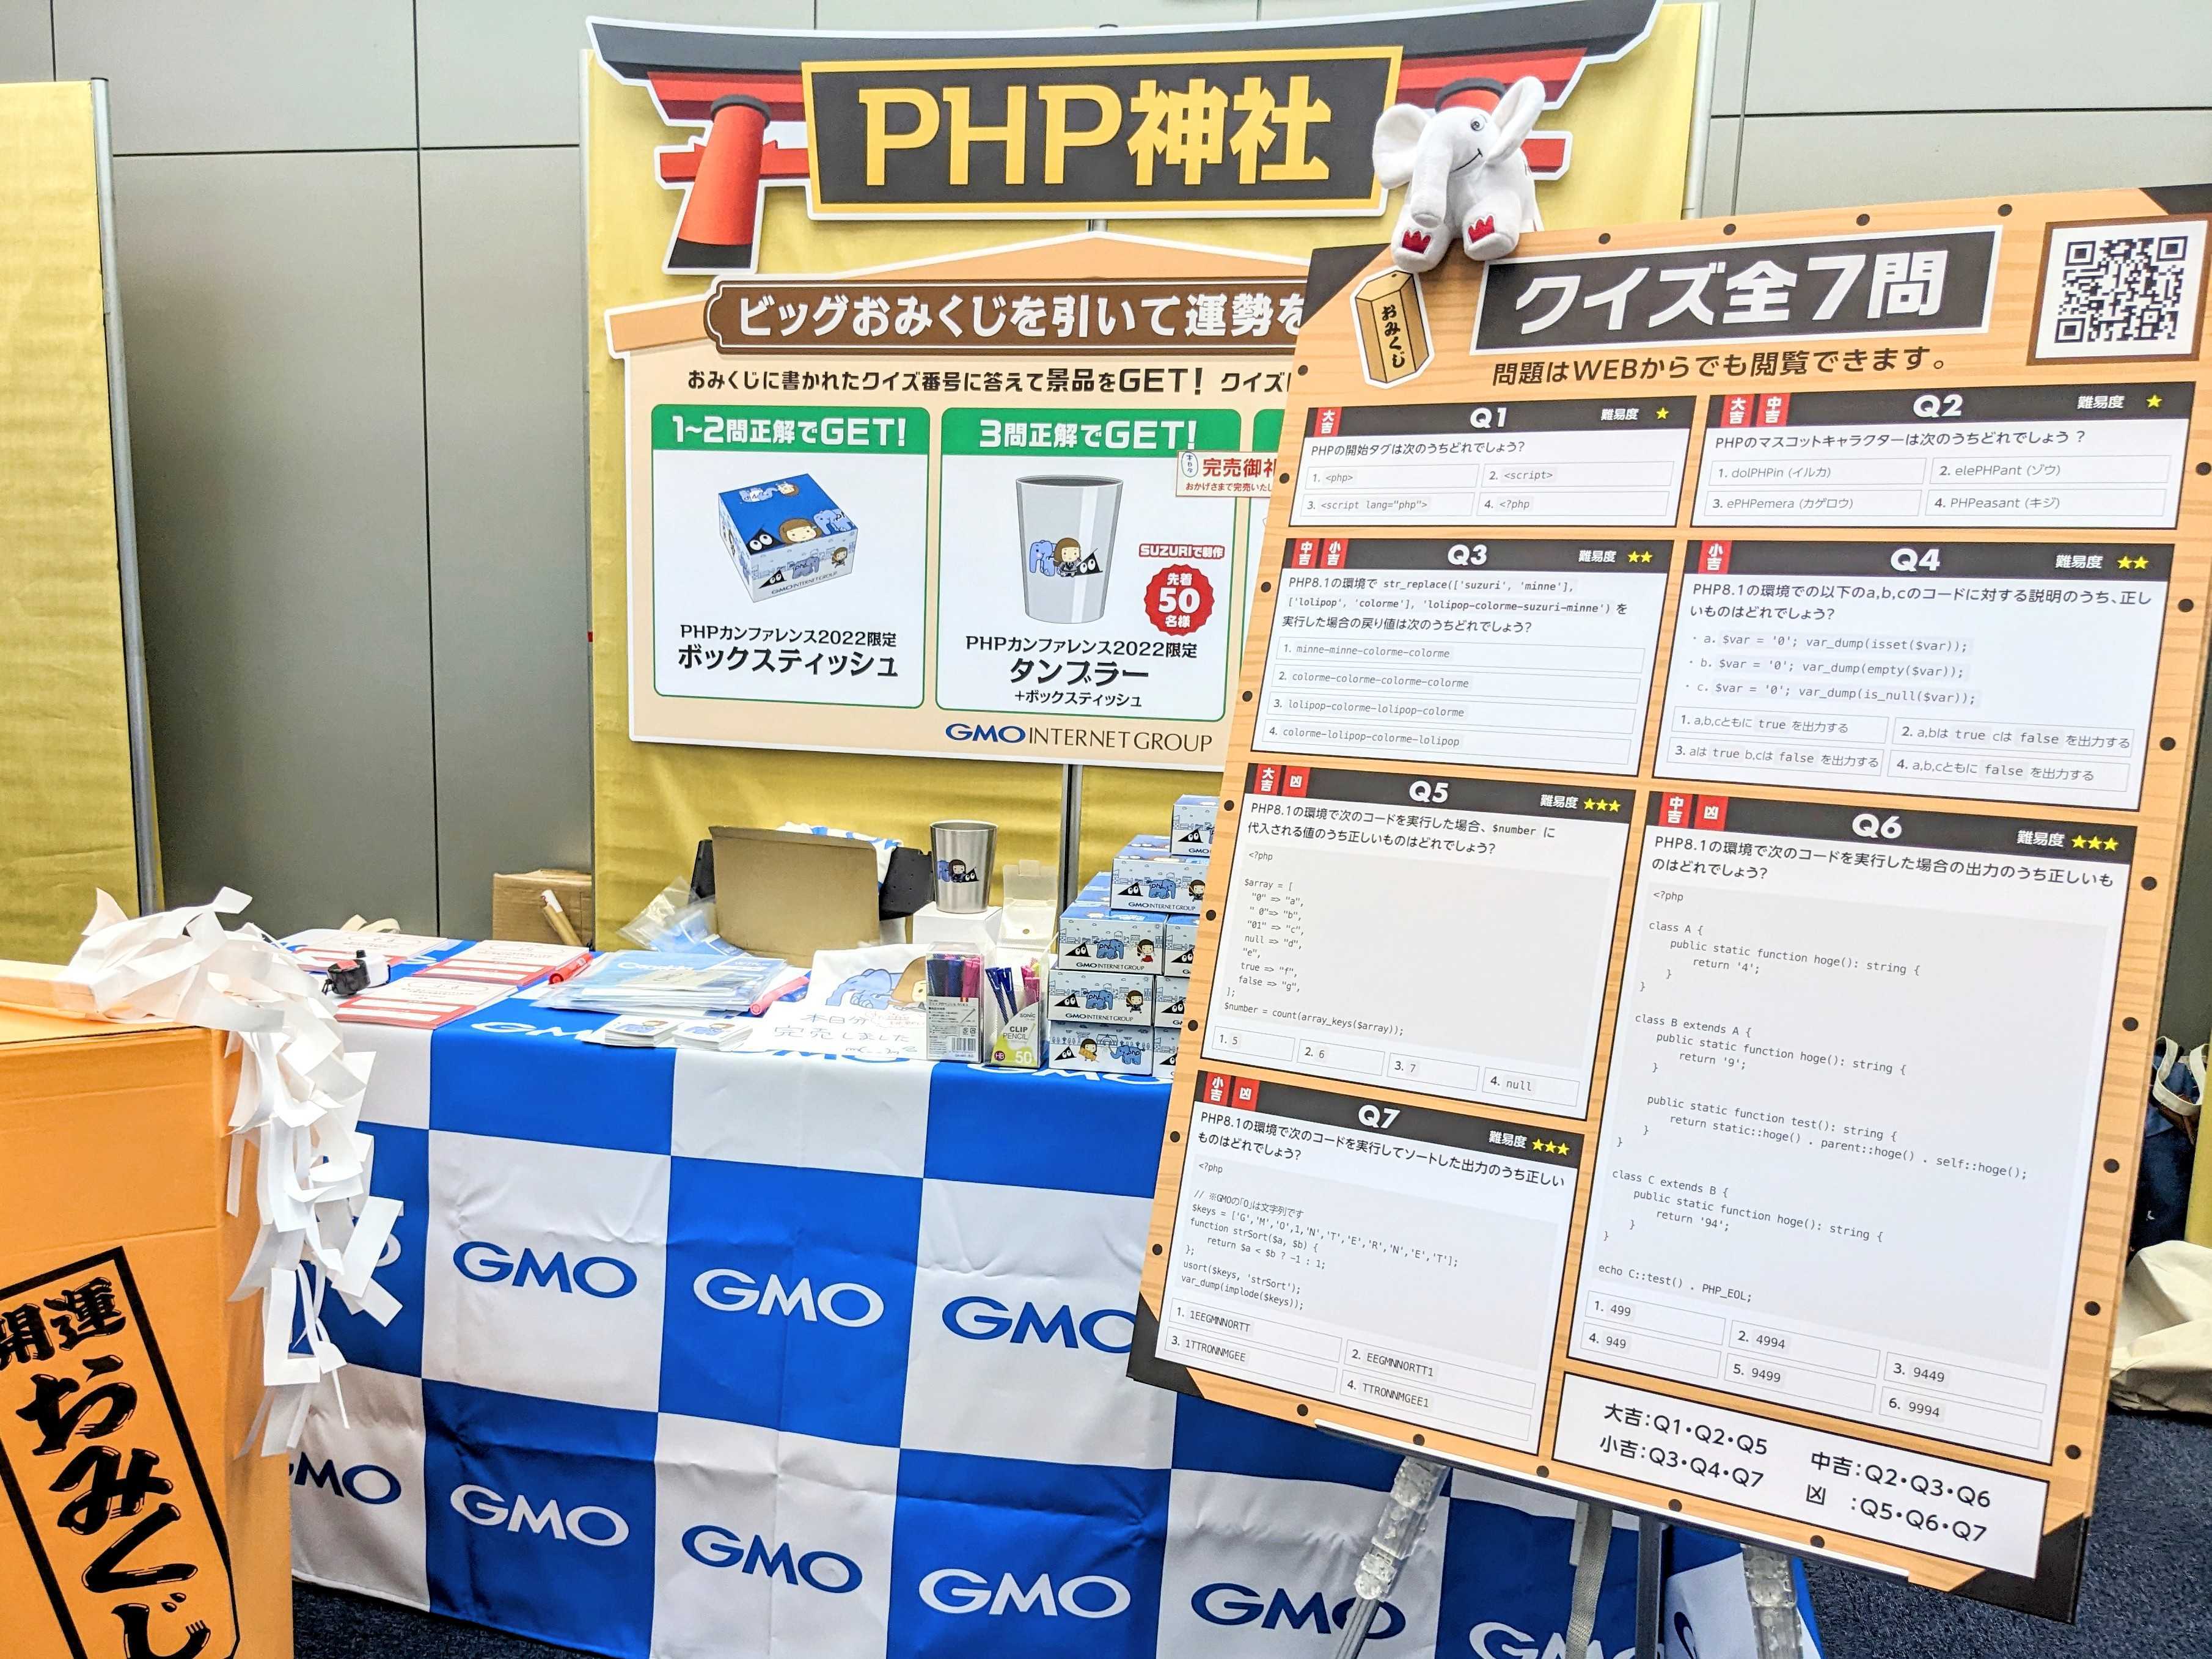 PHP Conference Japan 2022 GMOインターネットグループのブース「PHP神社」の様子